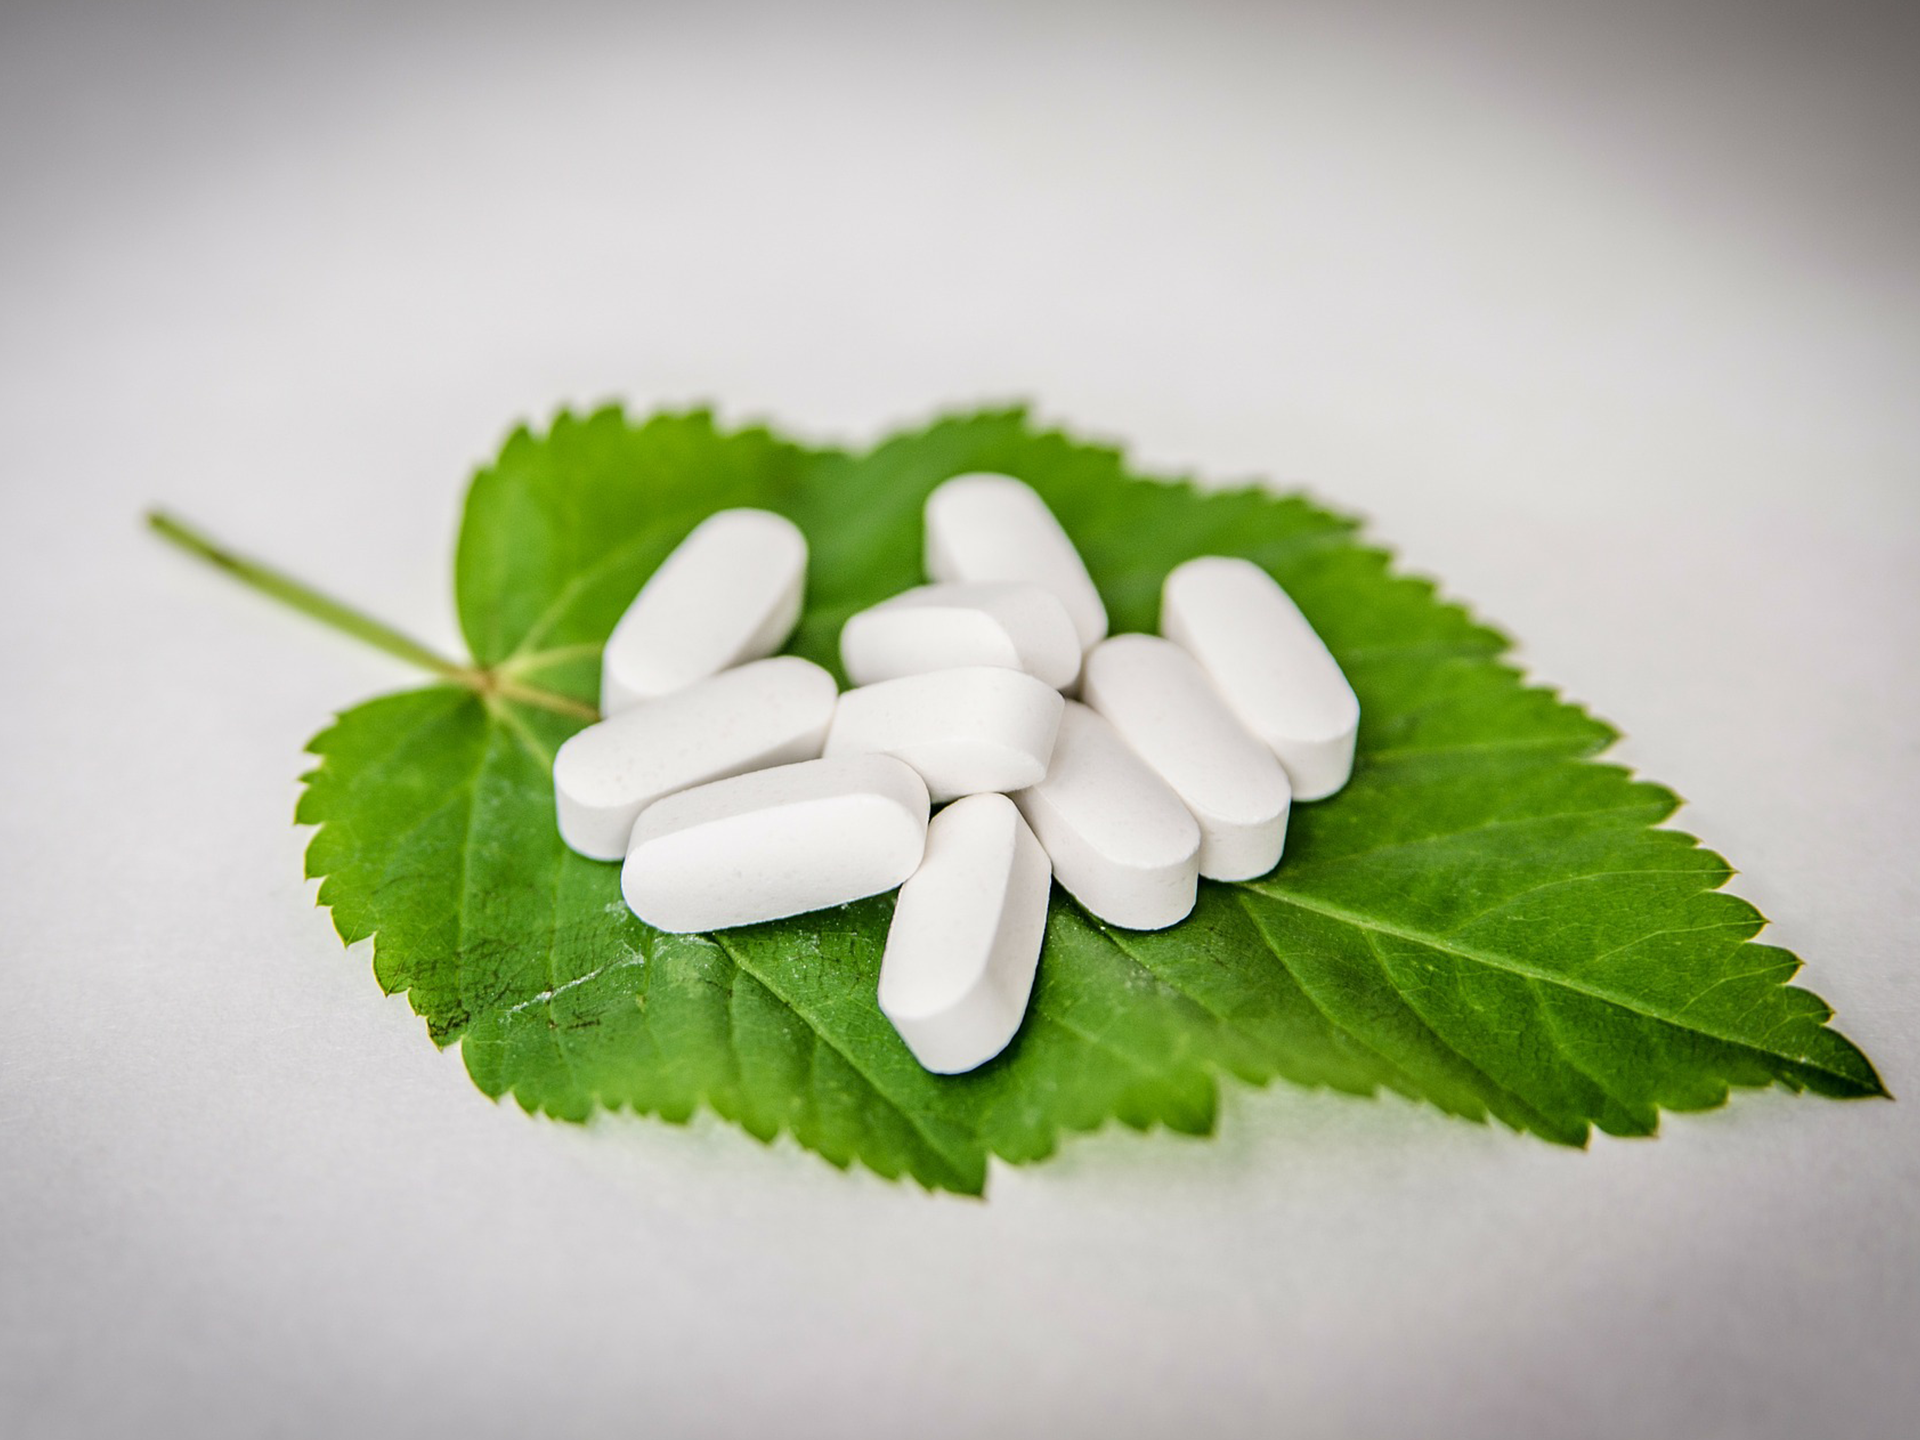 Na zdjęciu znajdują się podłużne białe tabletki ułożone na zielonym liściu. Tło jest białe.